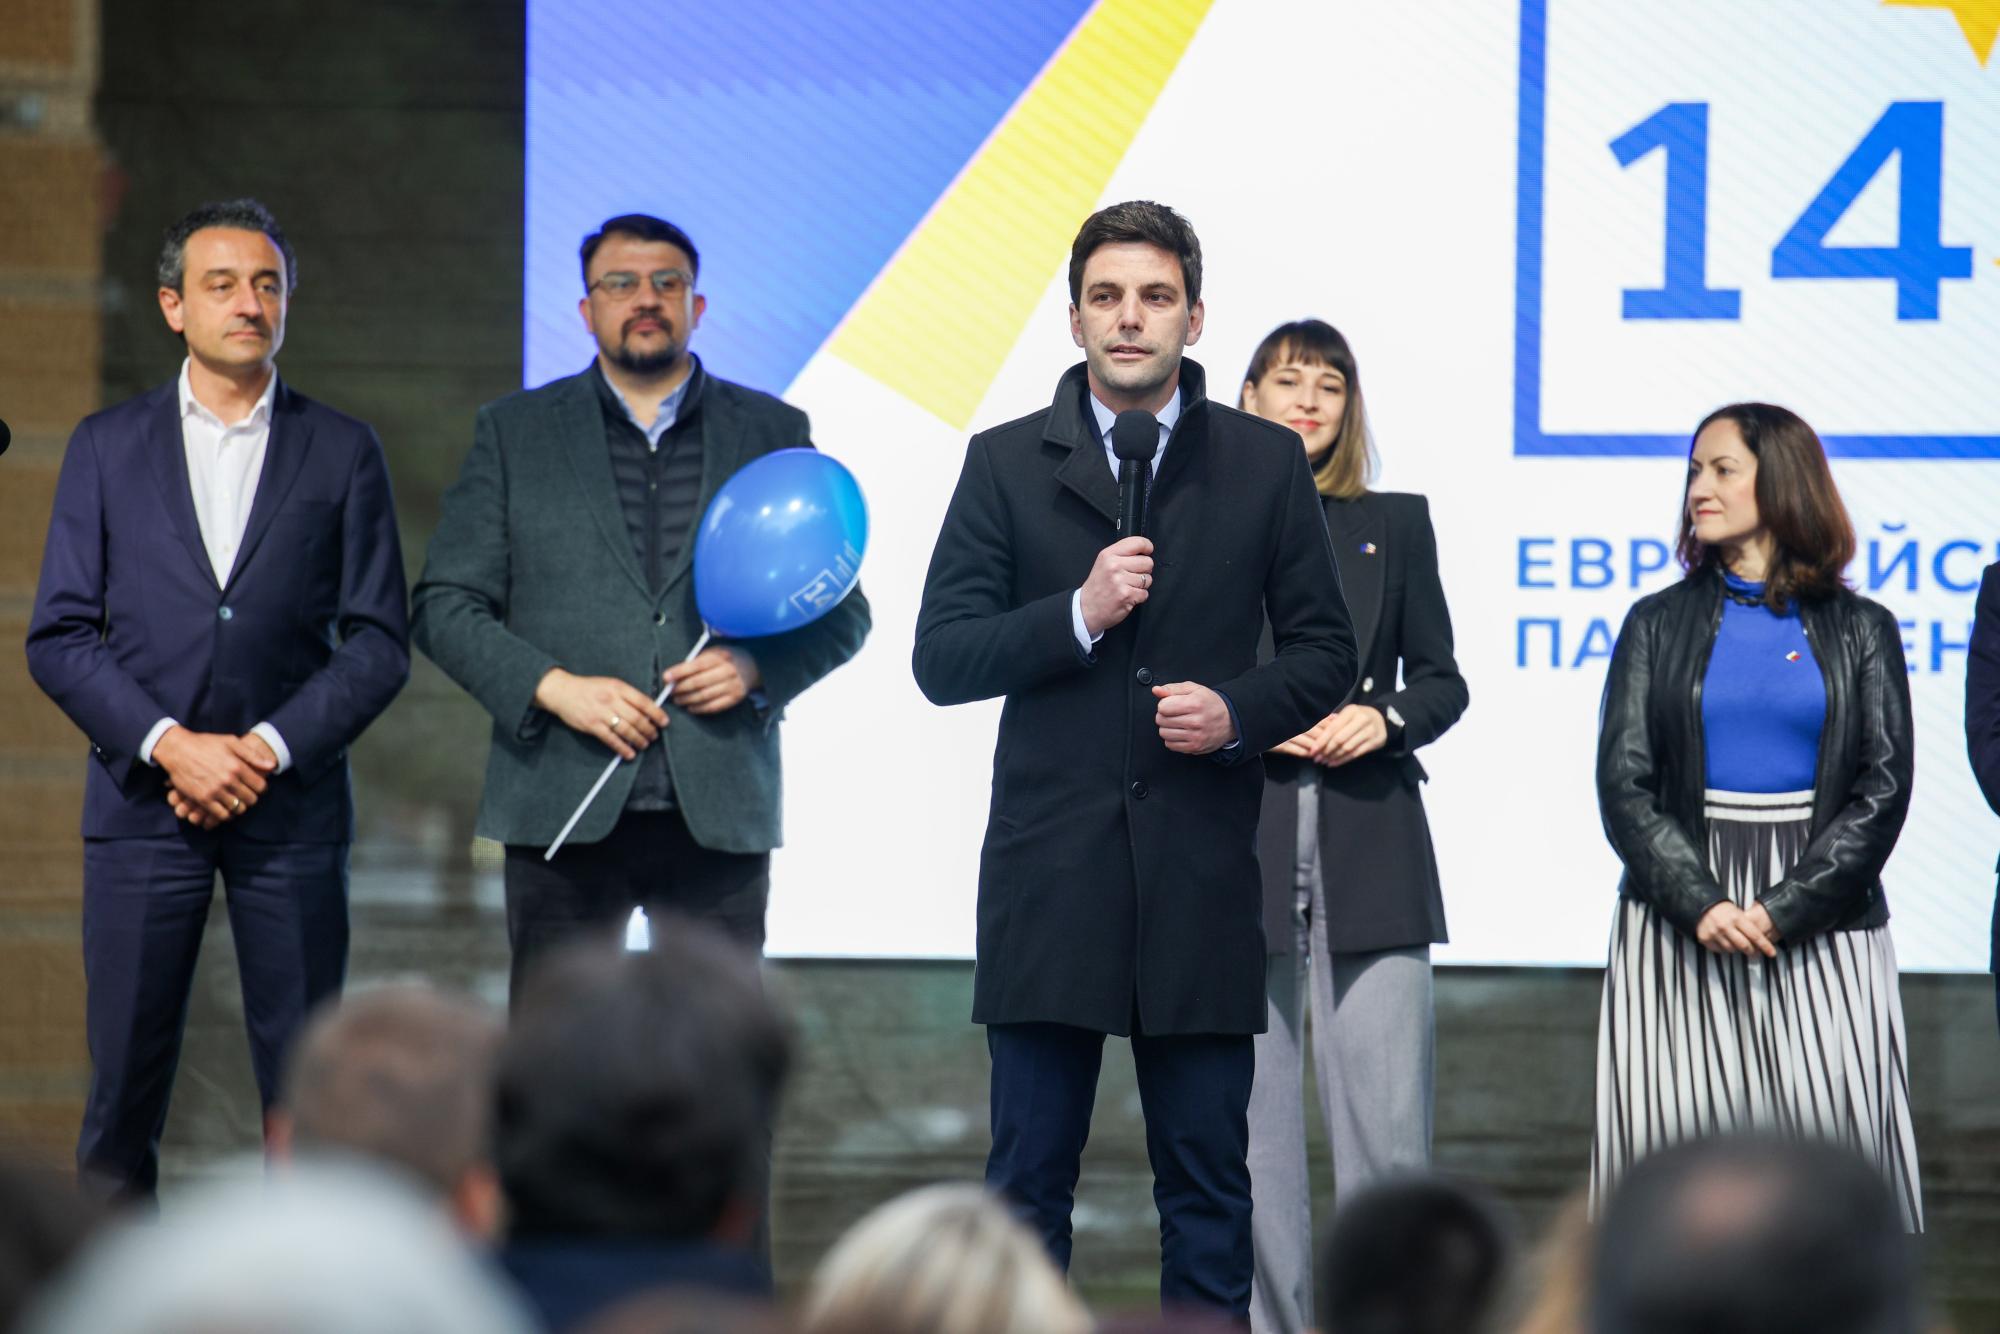 "Продължаваме промяната - Демократична България" стартират кампанията си (НА ЖИВО)